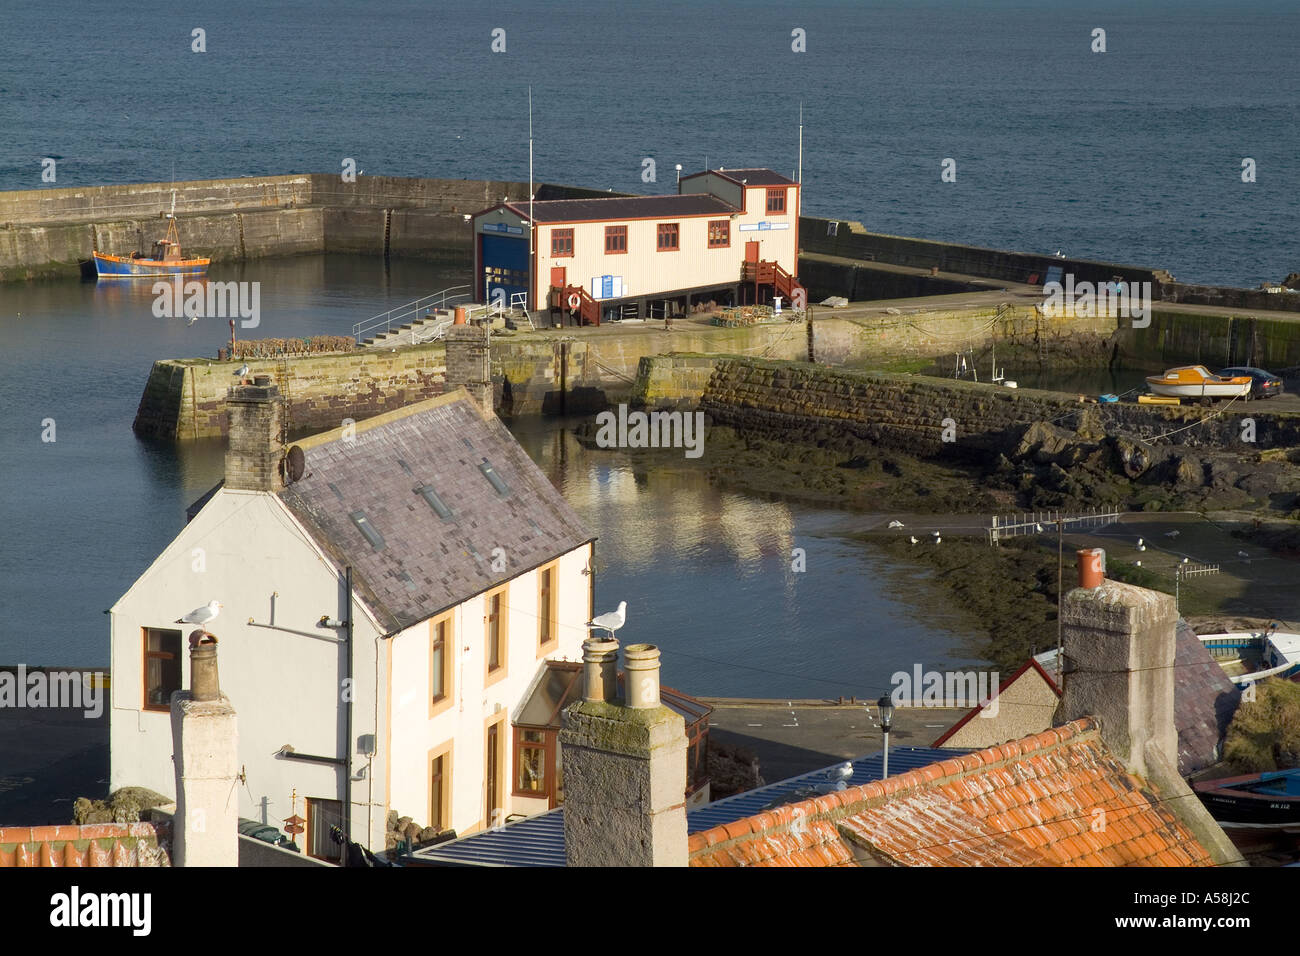 dh ST ABBS CONFINI villaggio di pesca case RNLI stazione salvagente porto scozzese porto di scozia Foto Stock